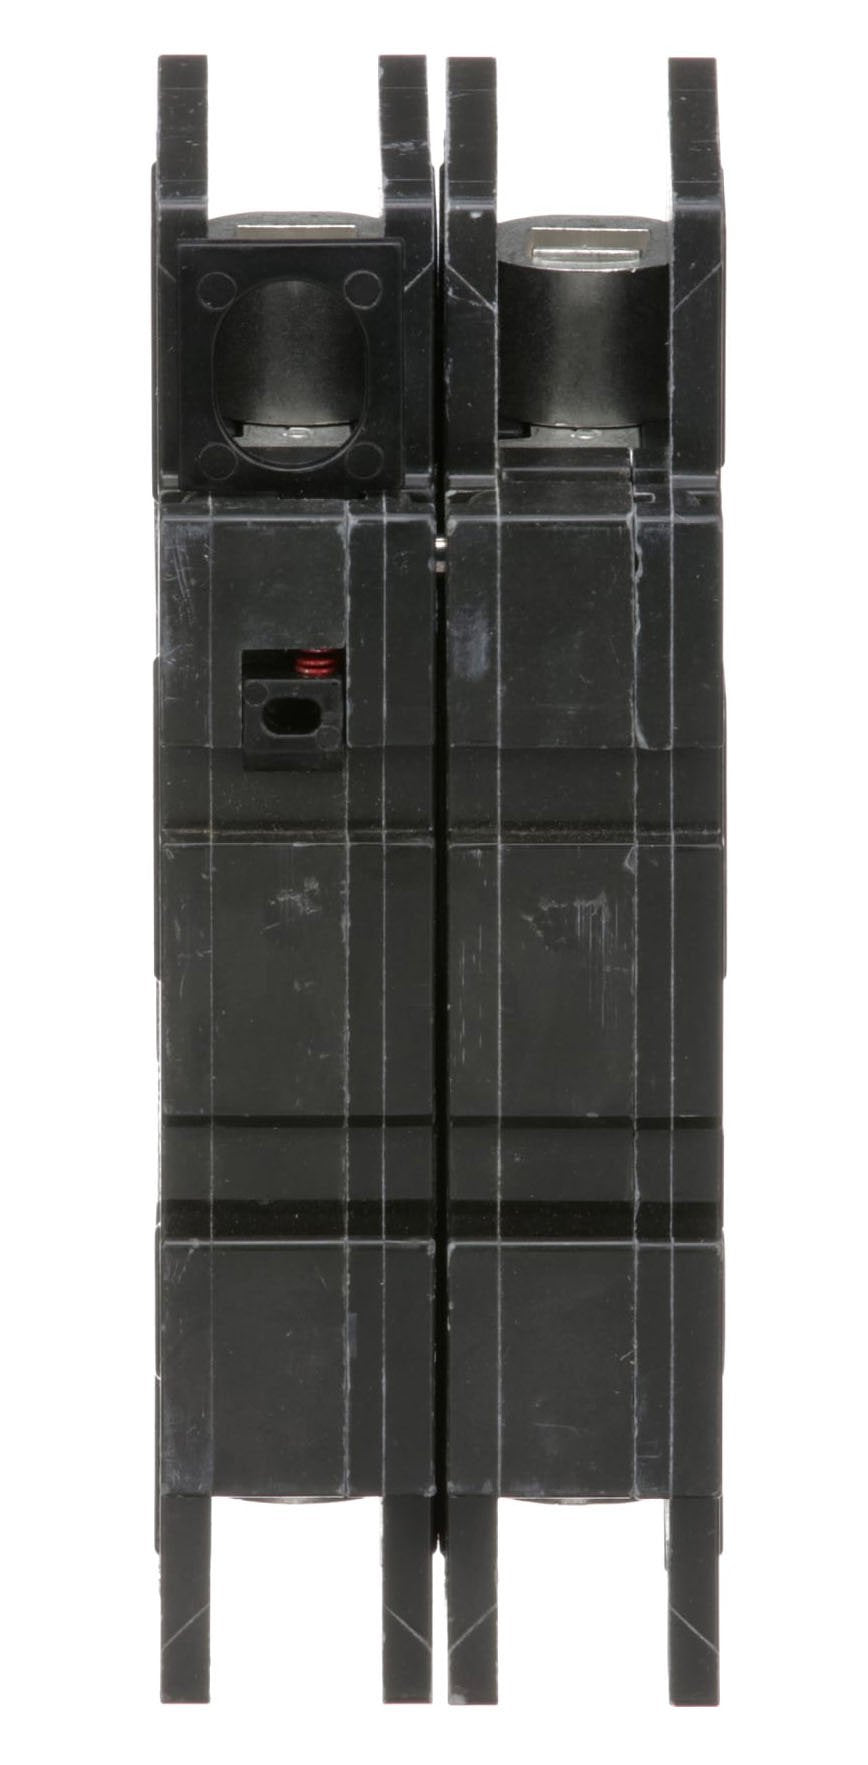 QOU250 - Square D - 50 Amp Circuit Breaker